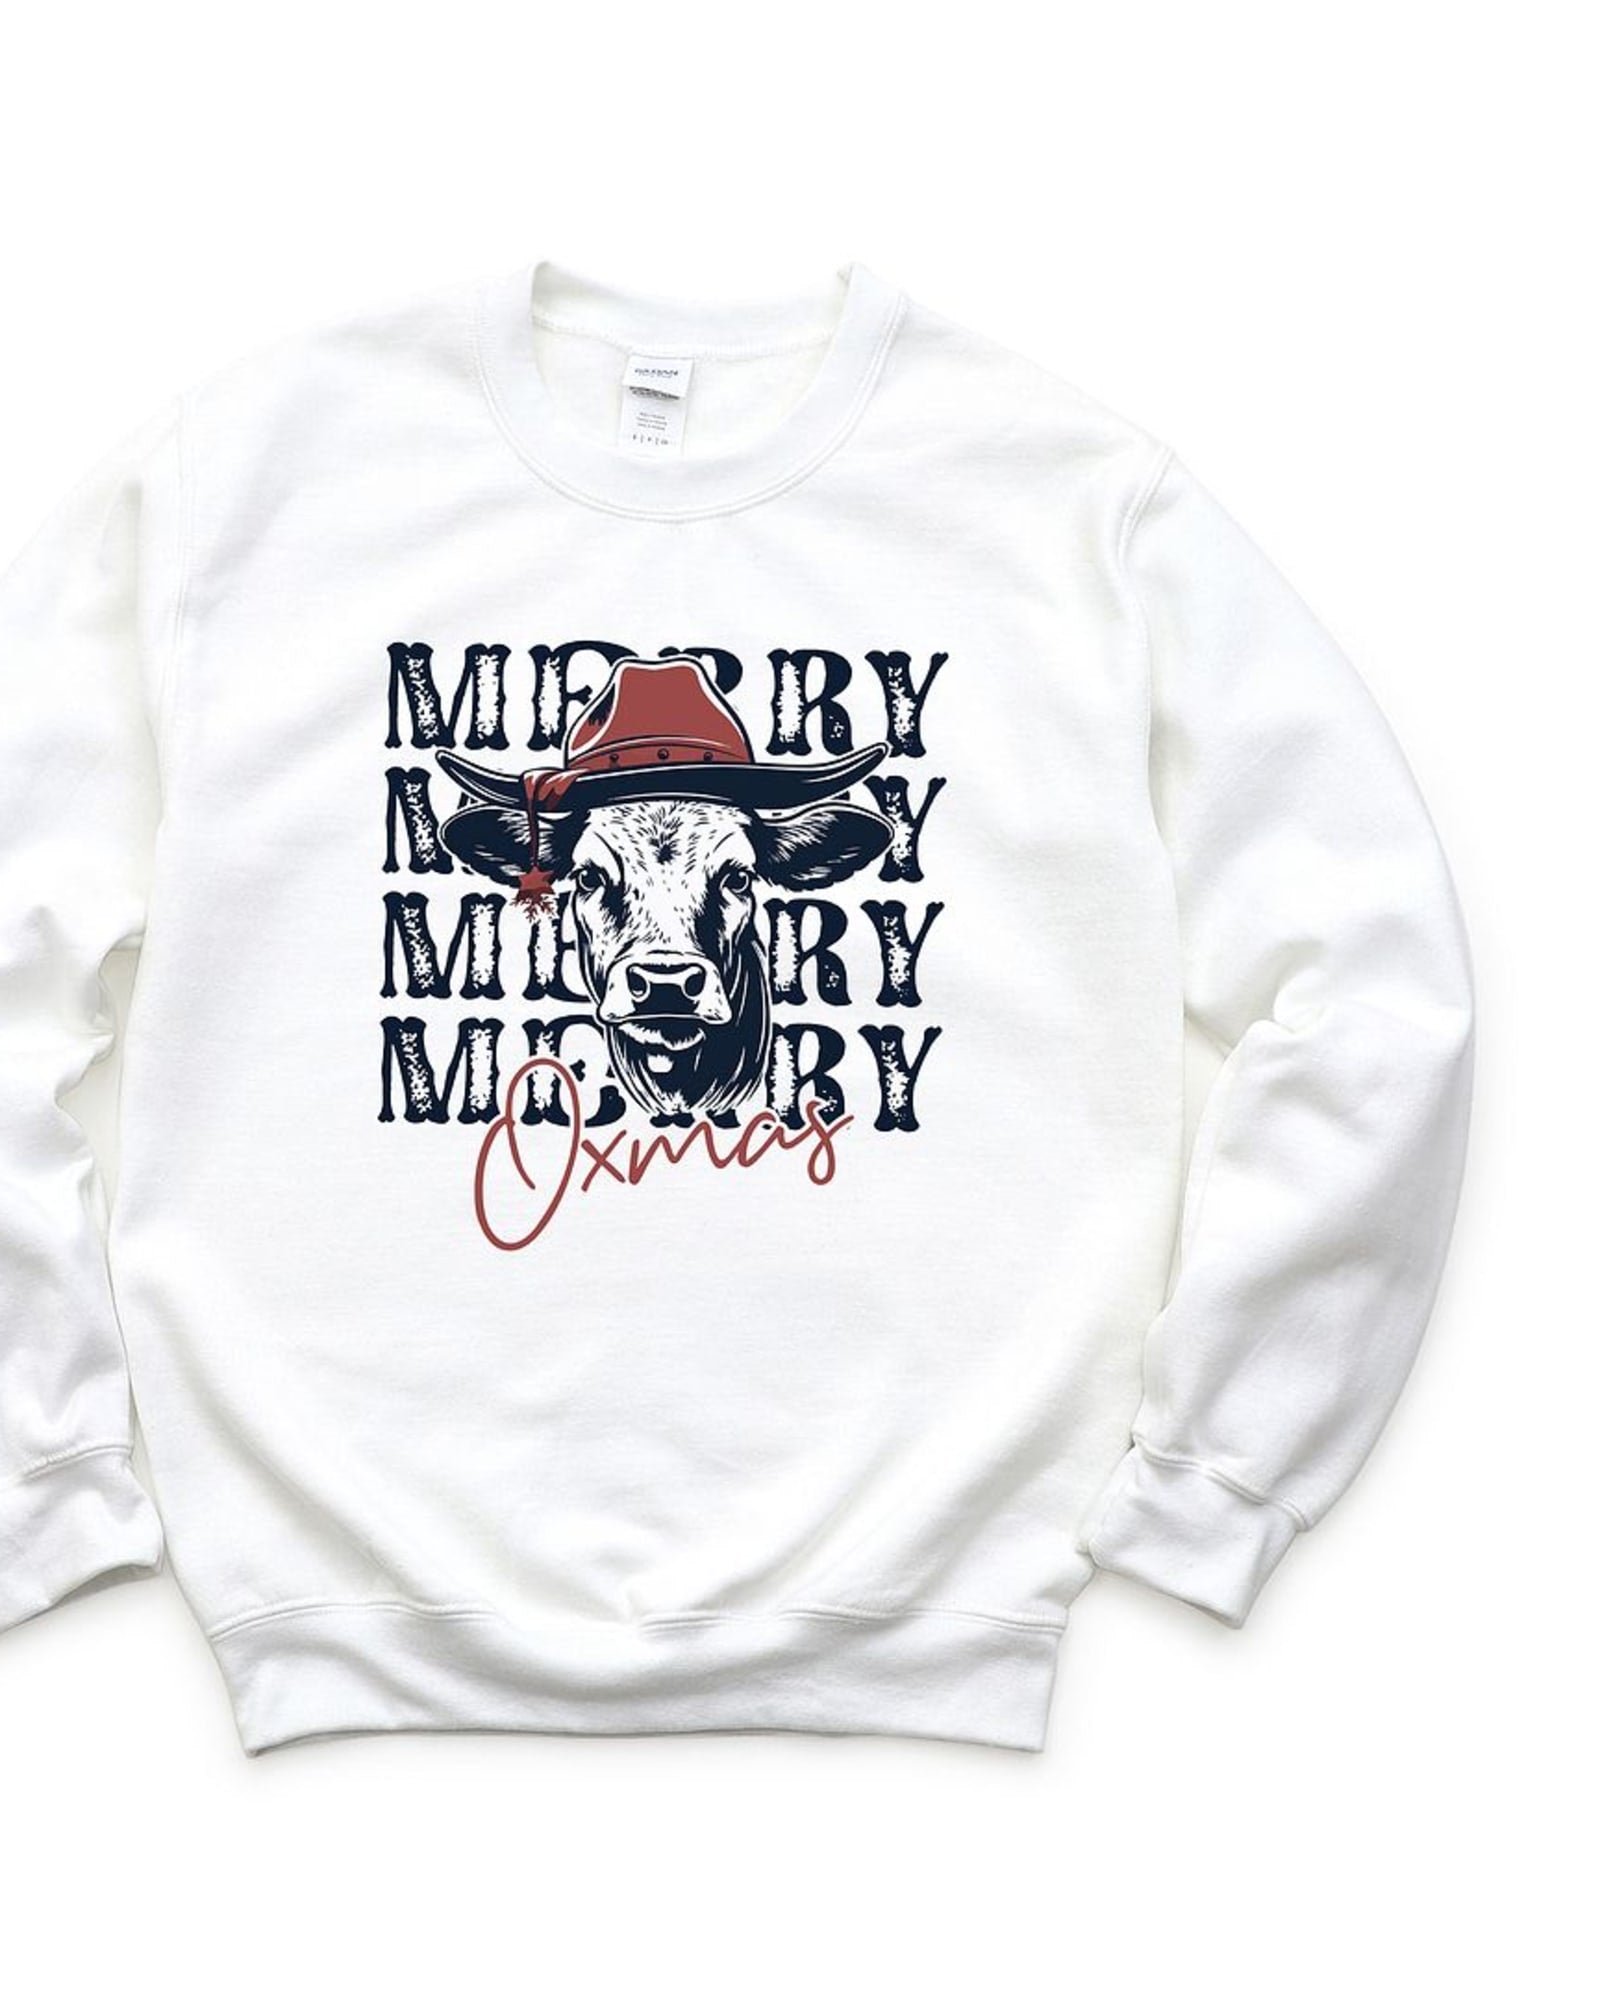 Merry Oxmas Graphic Sweatshirt | White